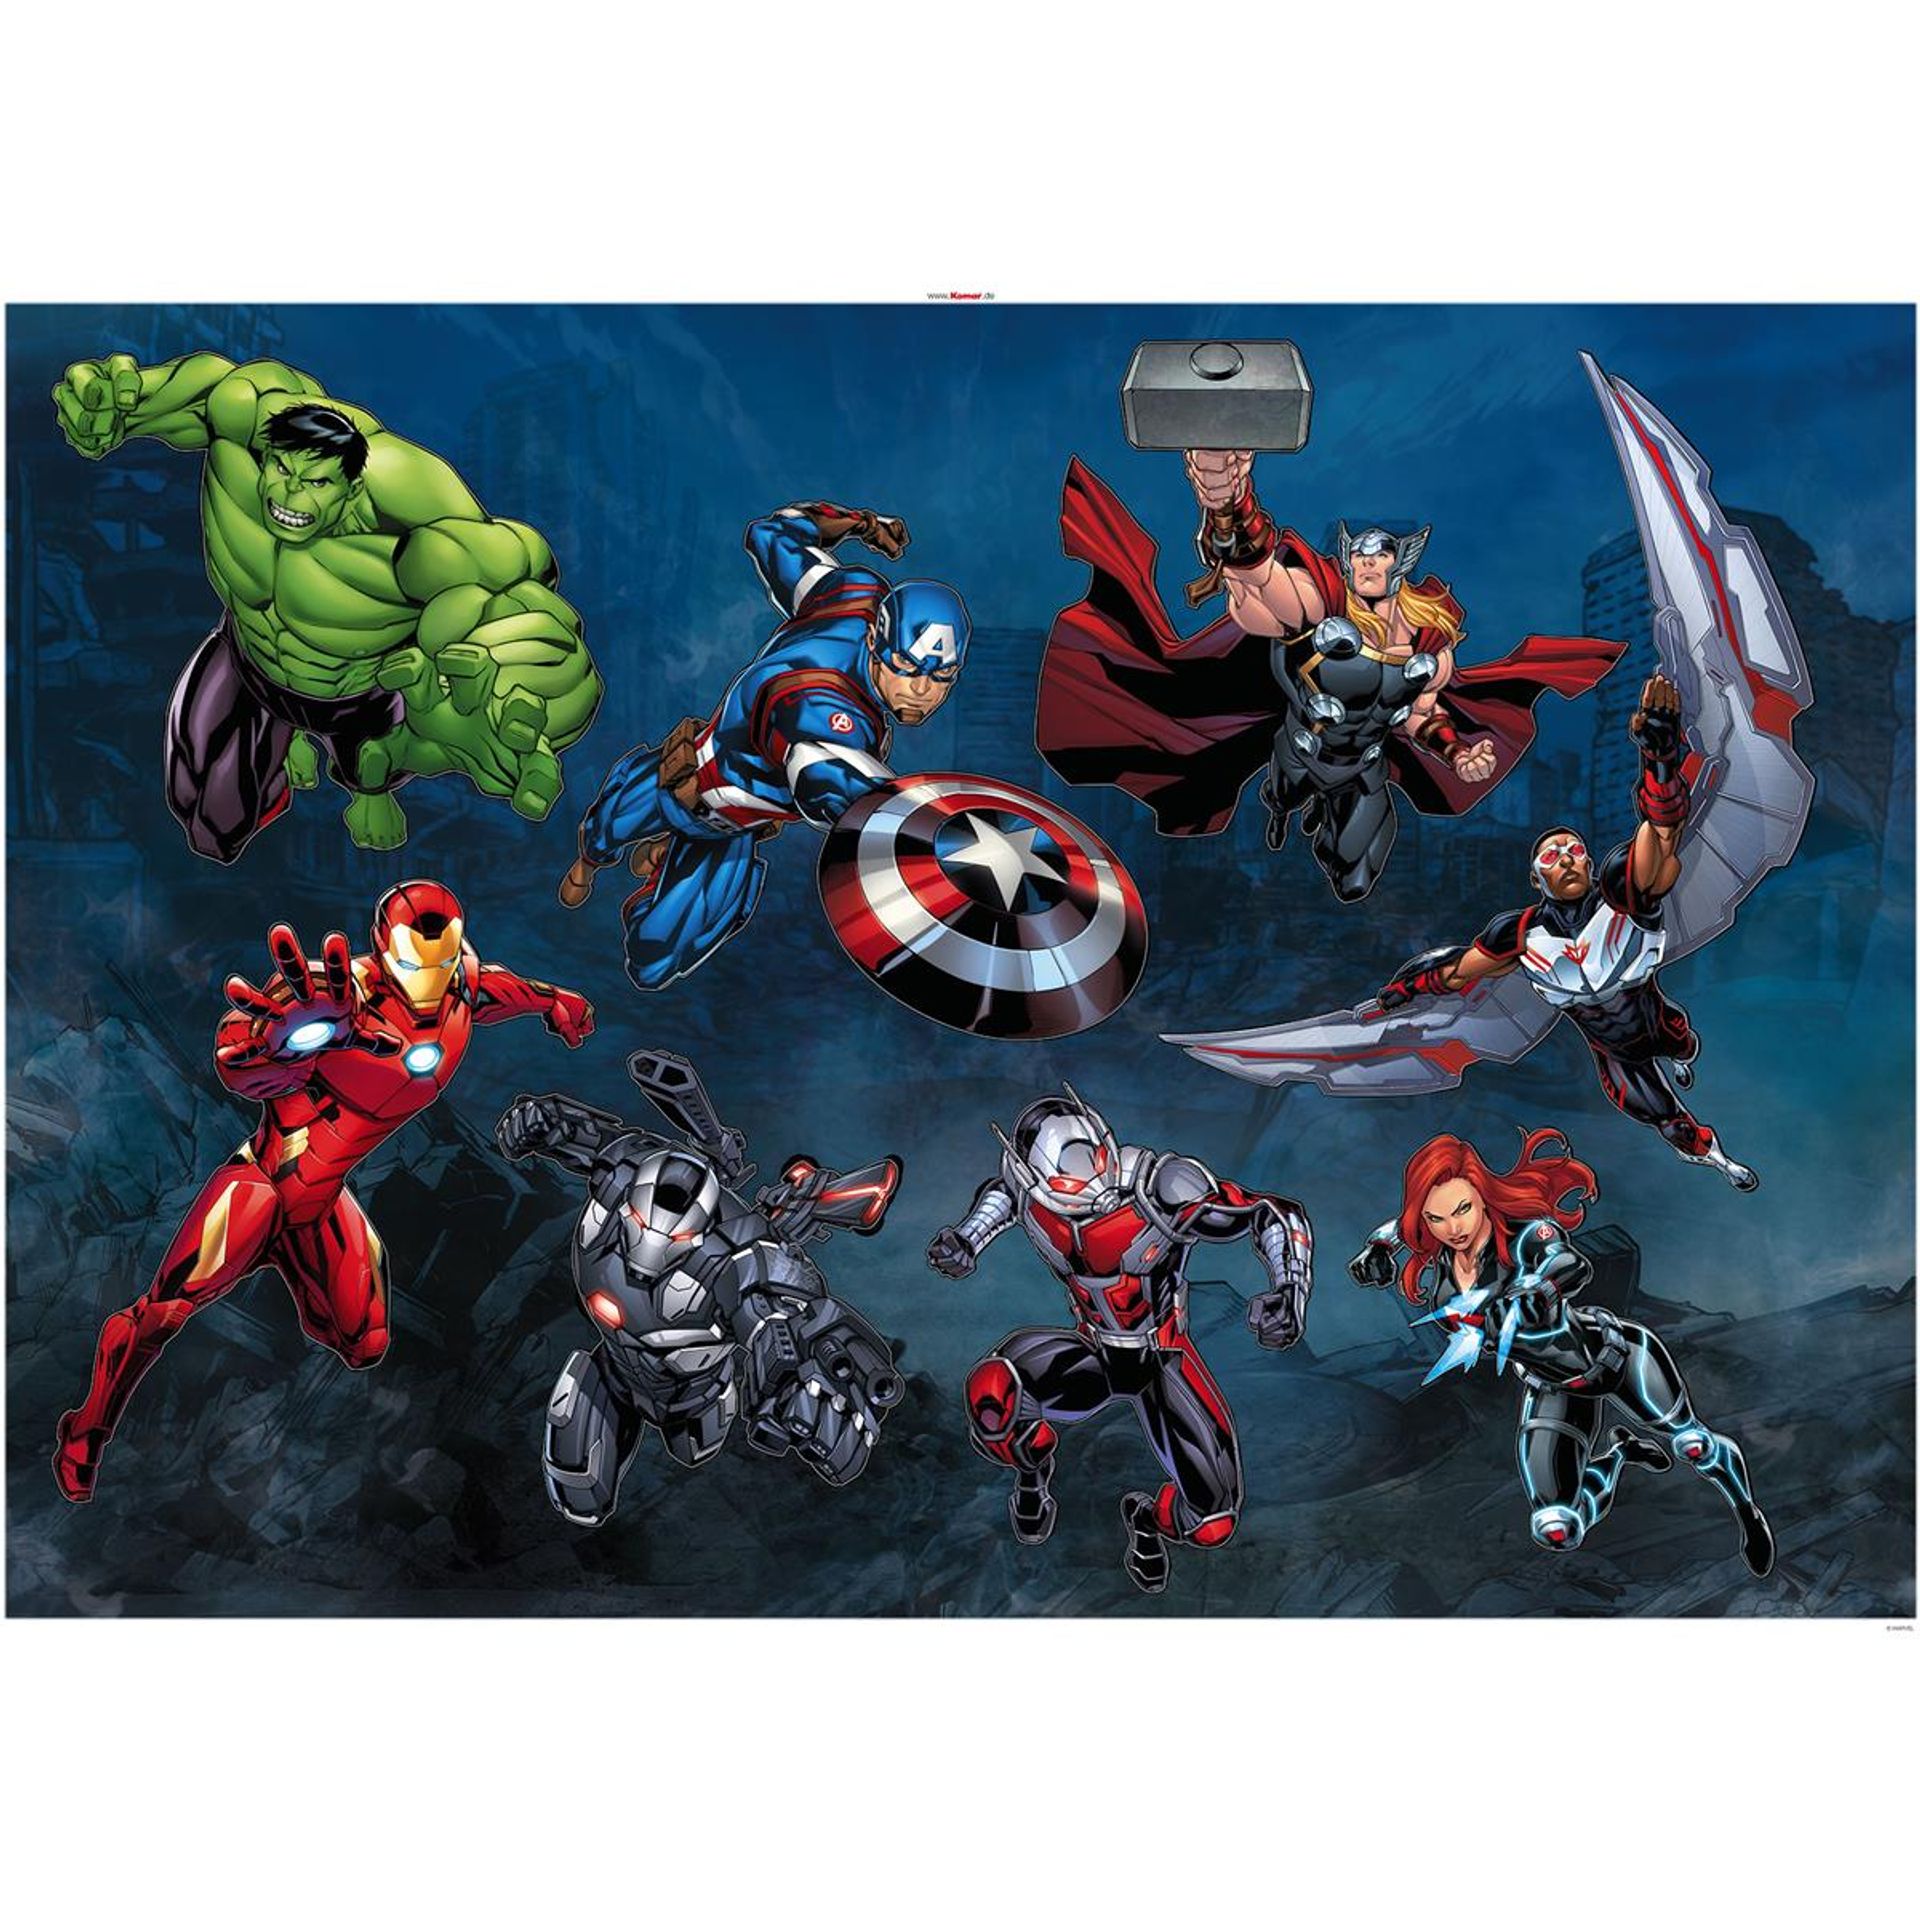 Wandtattoo - Avengers Action  - Größe 100 x 70 cm